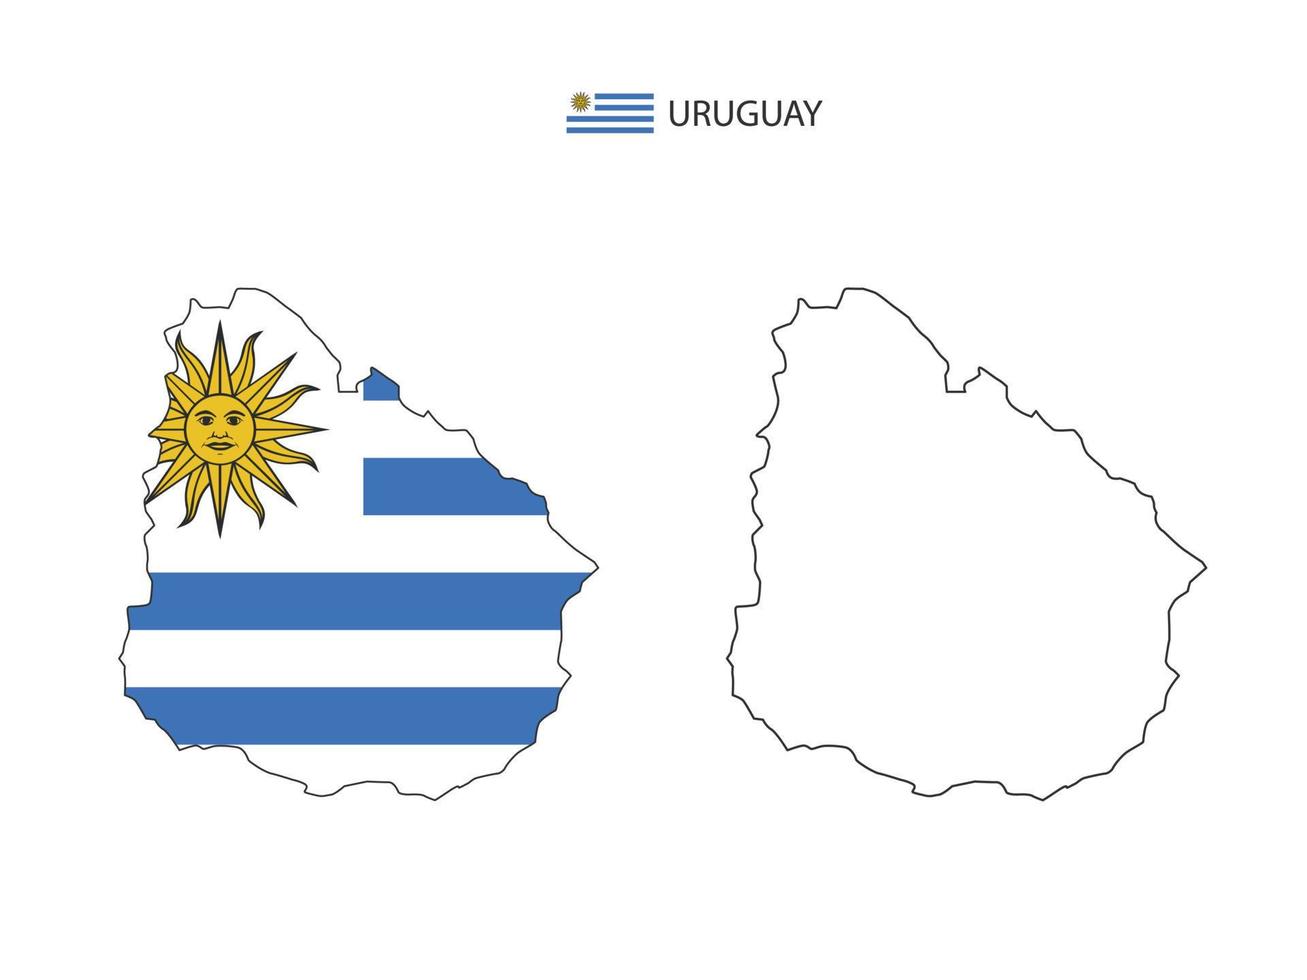 vetor da cidade do mapa do uruguai dividido pelo estilo de simplicidade do contorno. tem 2 versões, versão de linha fina preta e cor da versão da bandeira do país. ambos os mapas estavam no fundo branco.